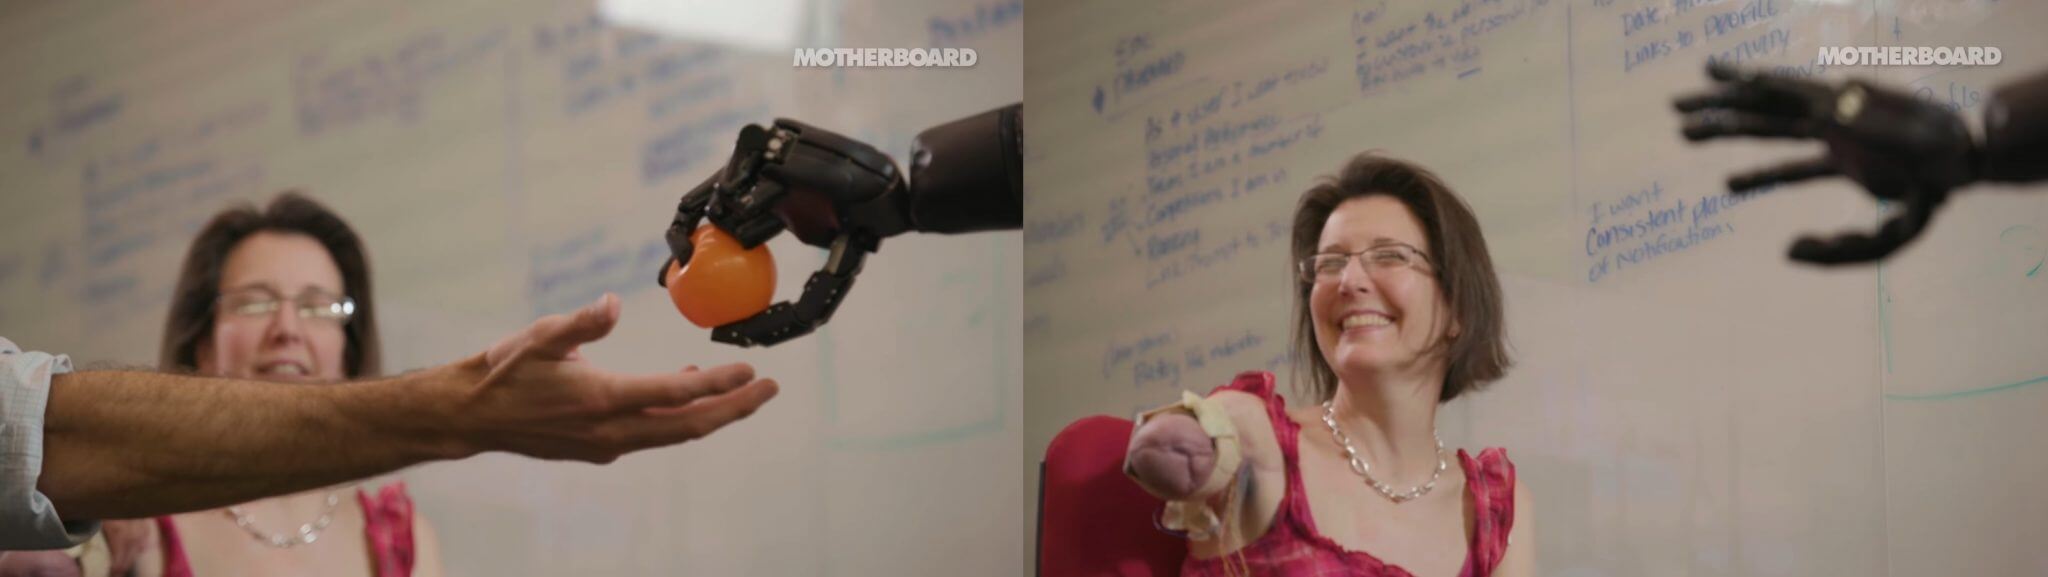 Nova geração de próteses biônicas pode revolucionar a sociedade